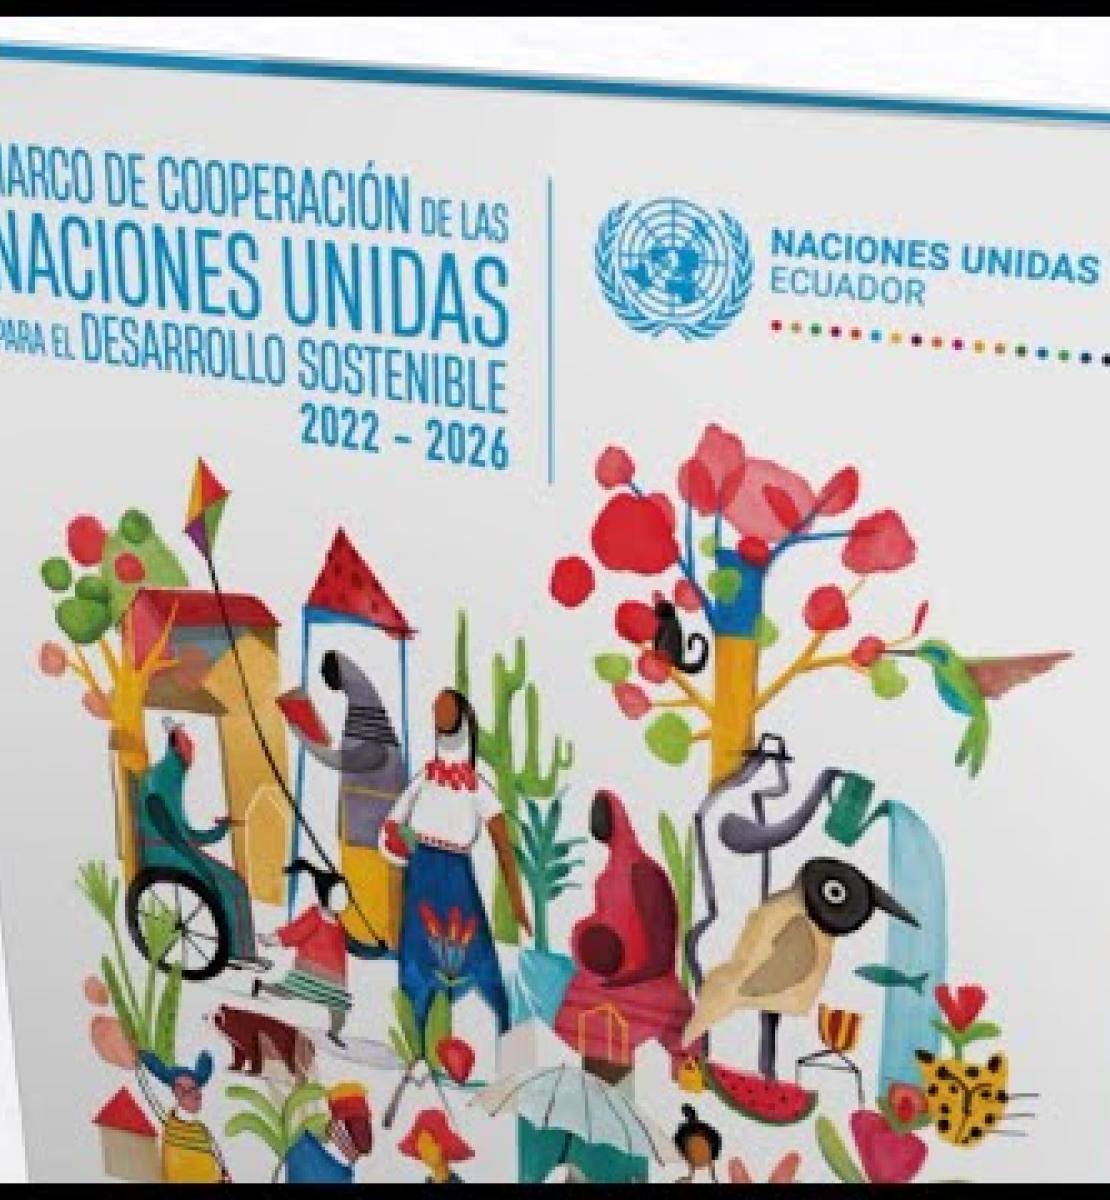 El nuevo Marco de Cooperación, una propuesta renovada para el Desarrollo Sostenible del Ecuador